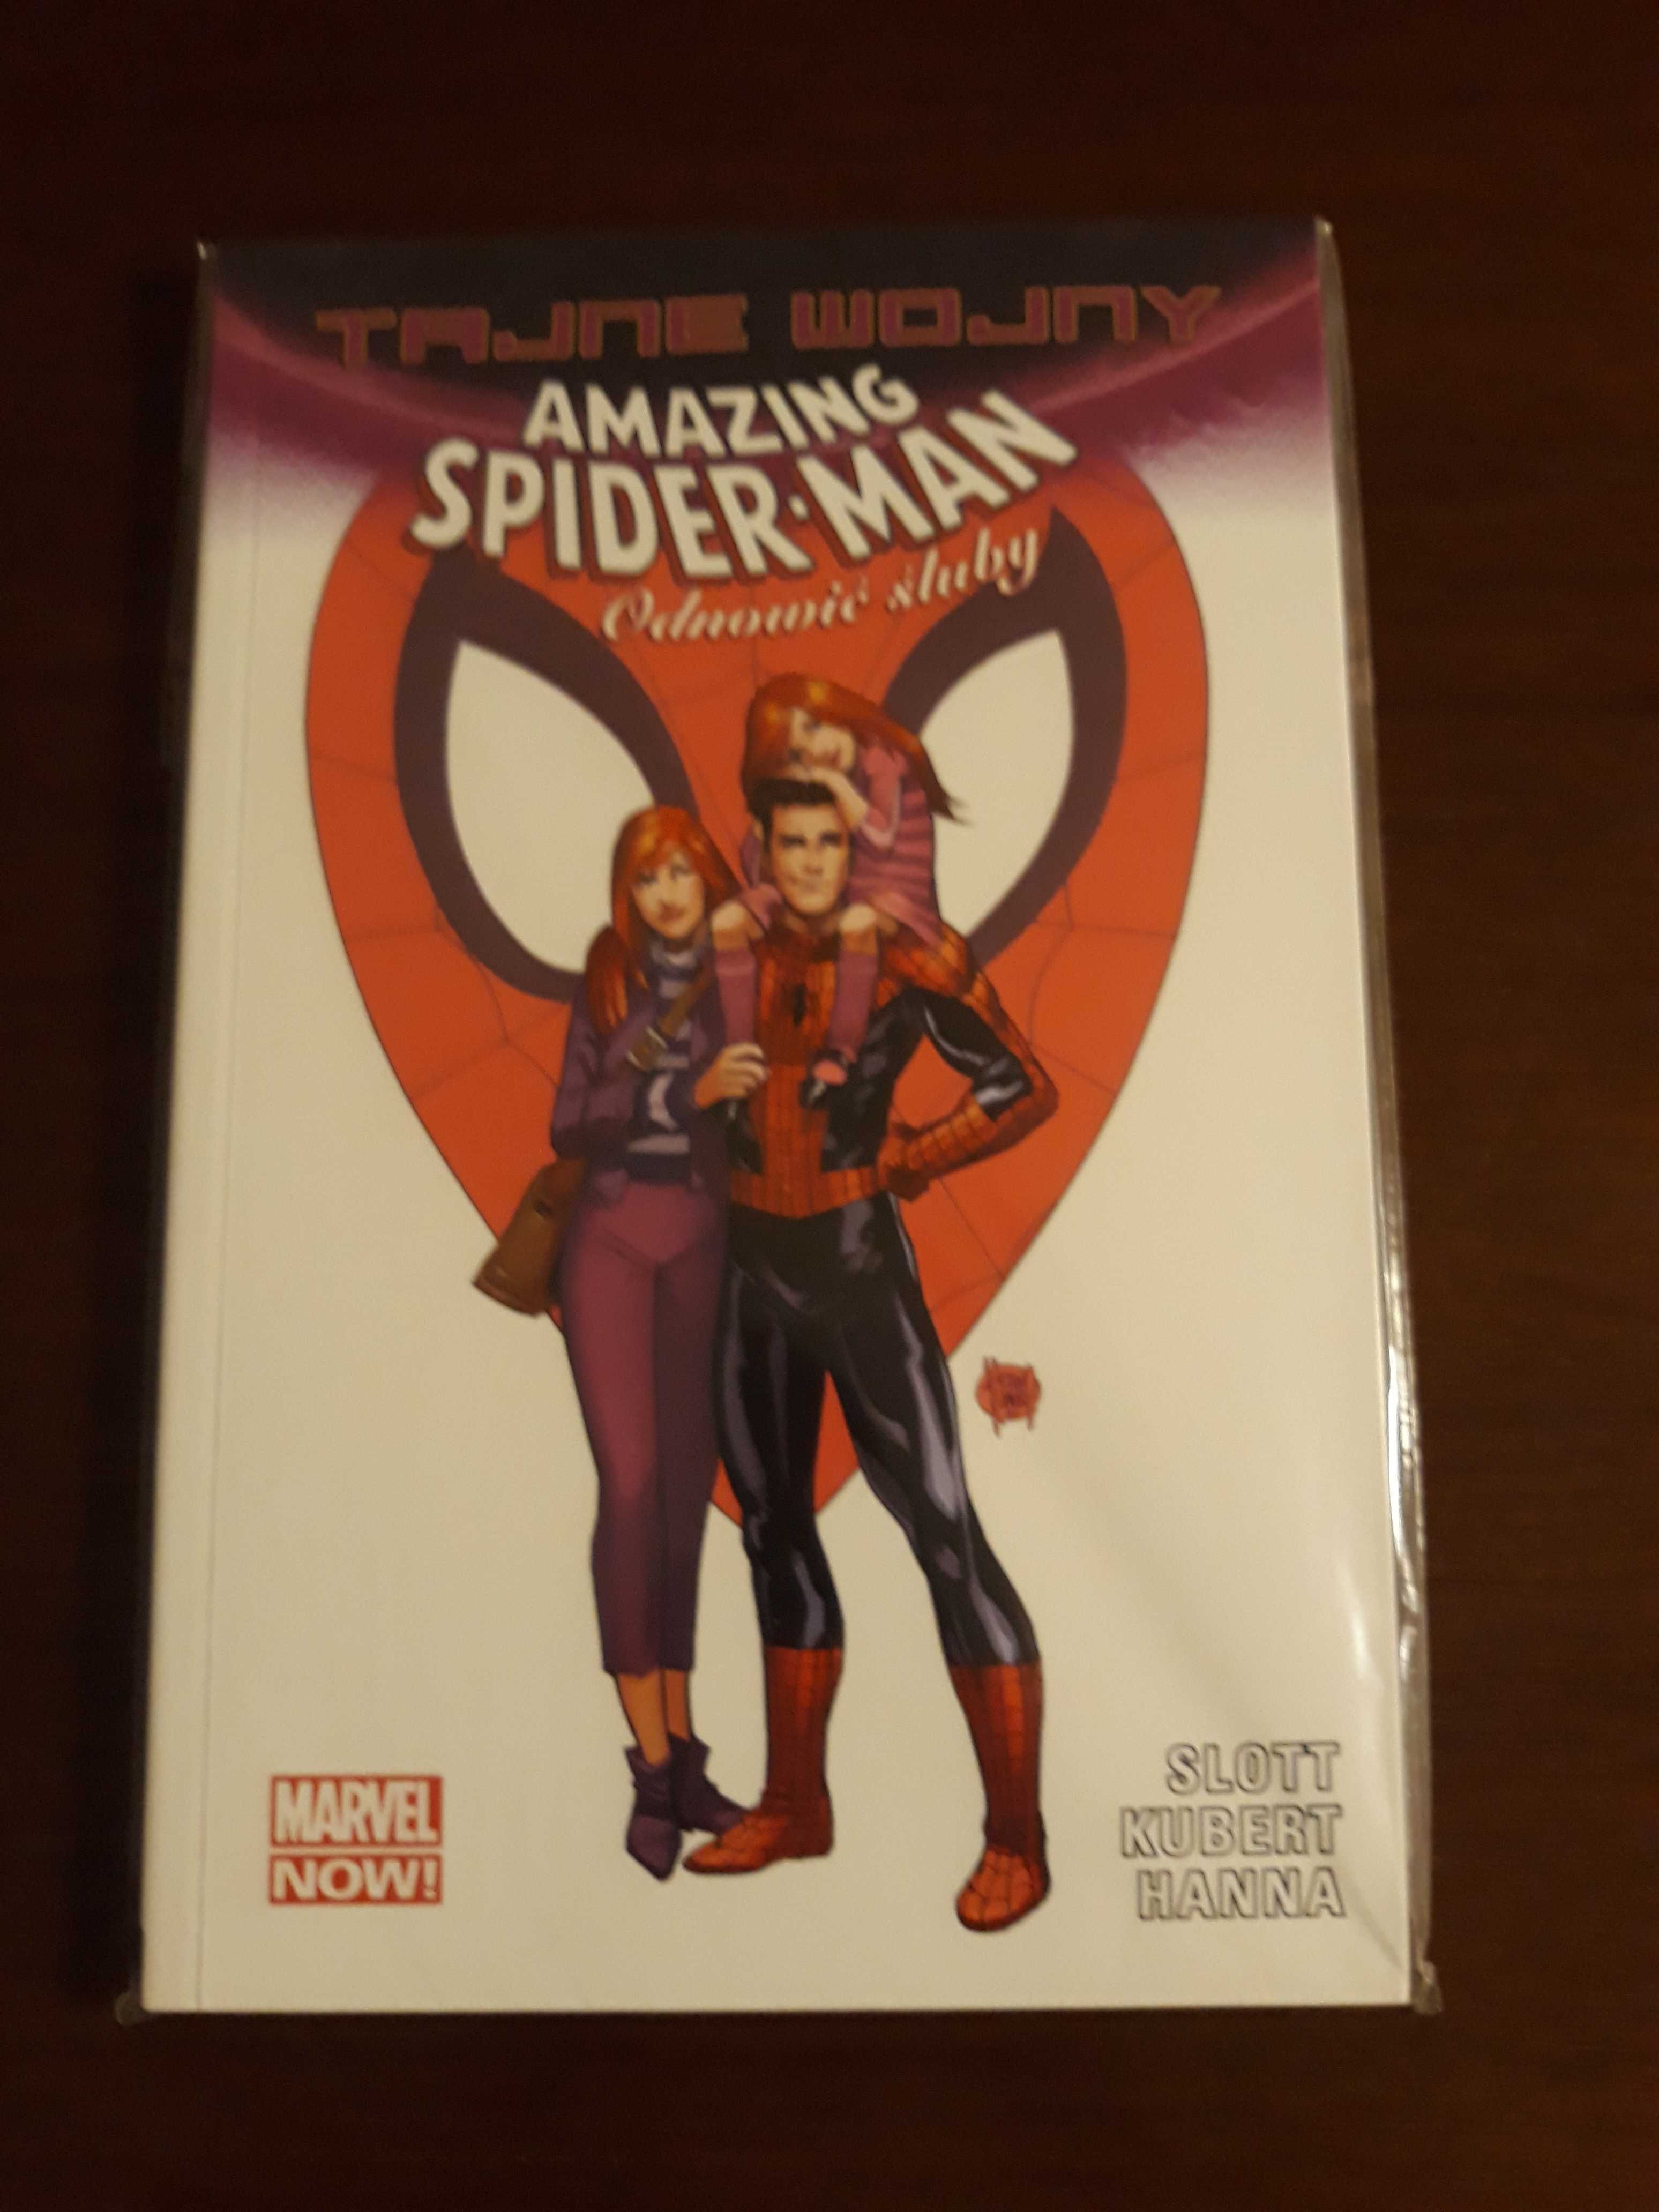 Tajne Wojny - Amazing Spider-Man - Odnowić śluby - MARVEL NOW!